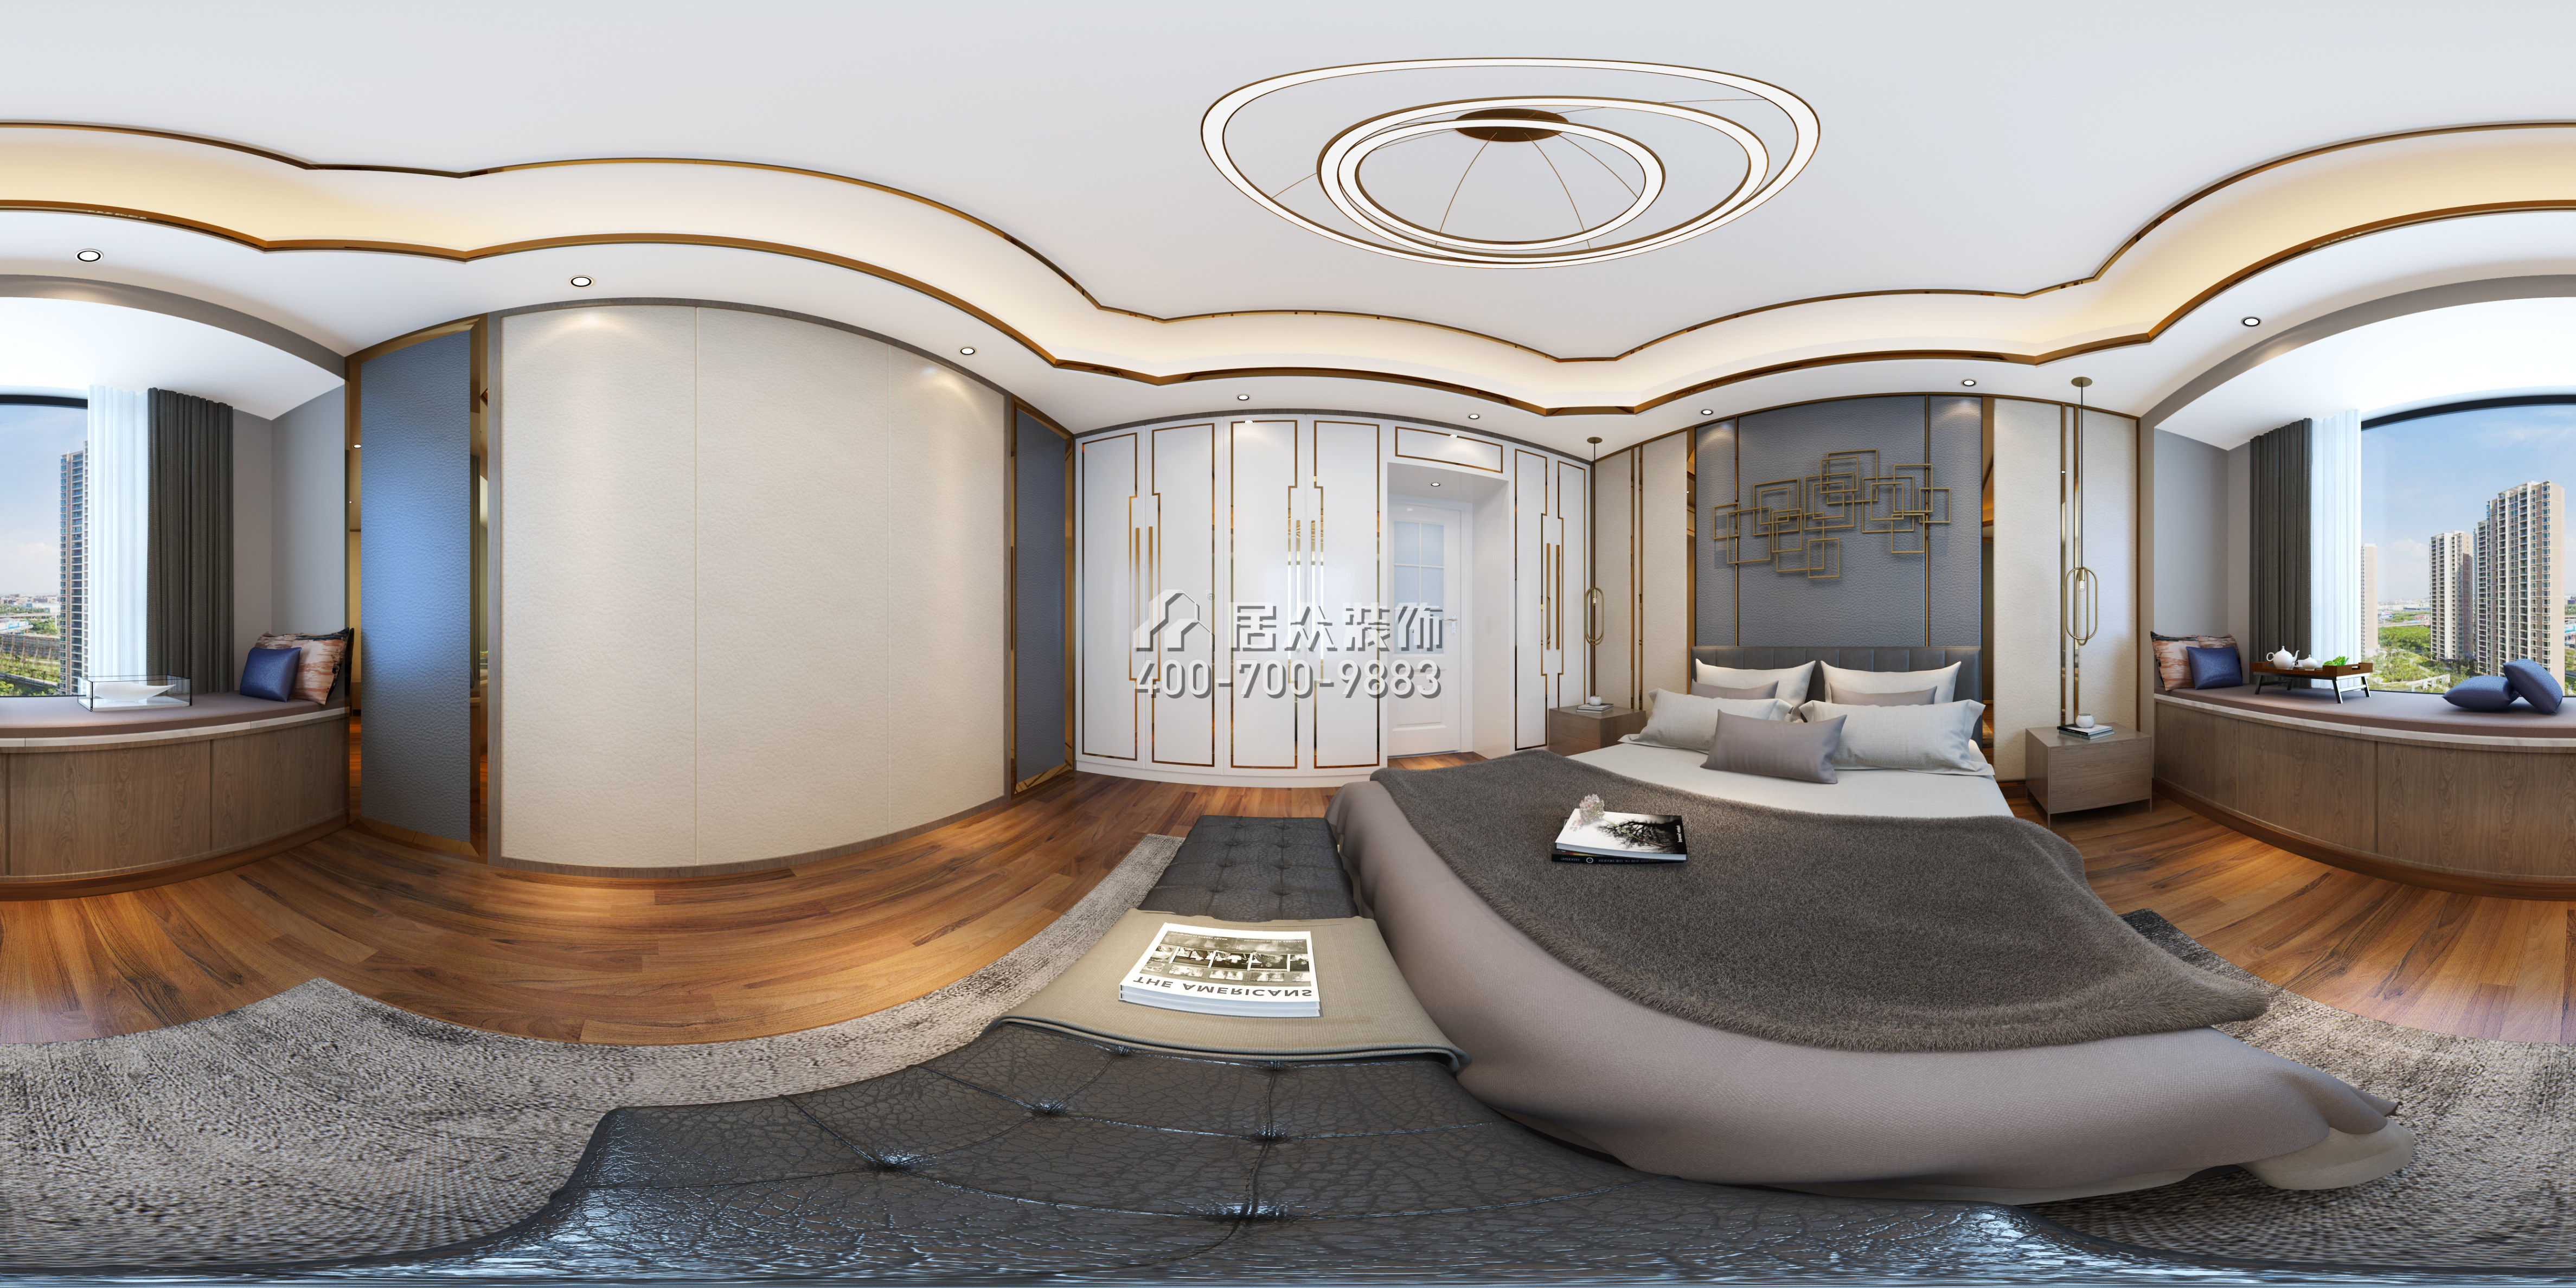 天匯城165平方米現代簡約風格平層戶型臥室裝修效果圖